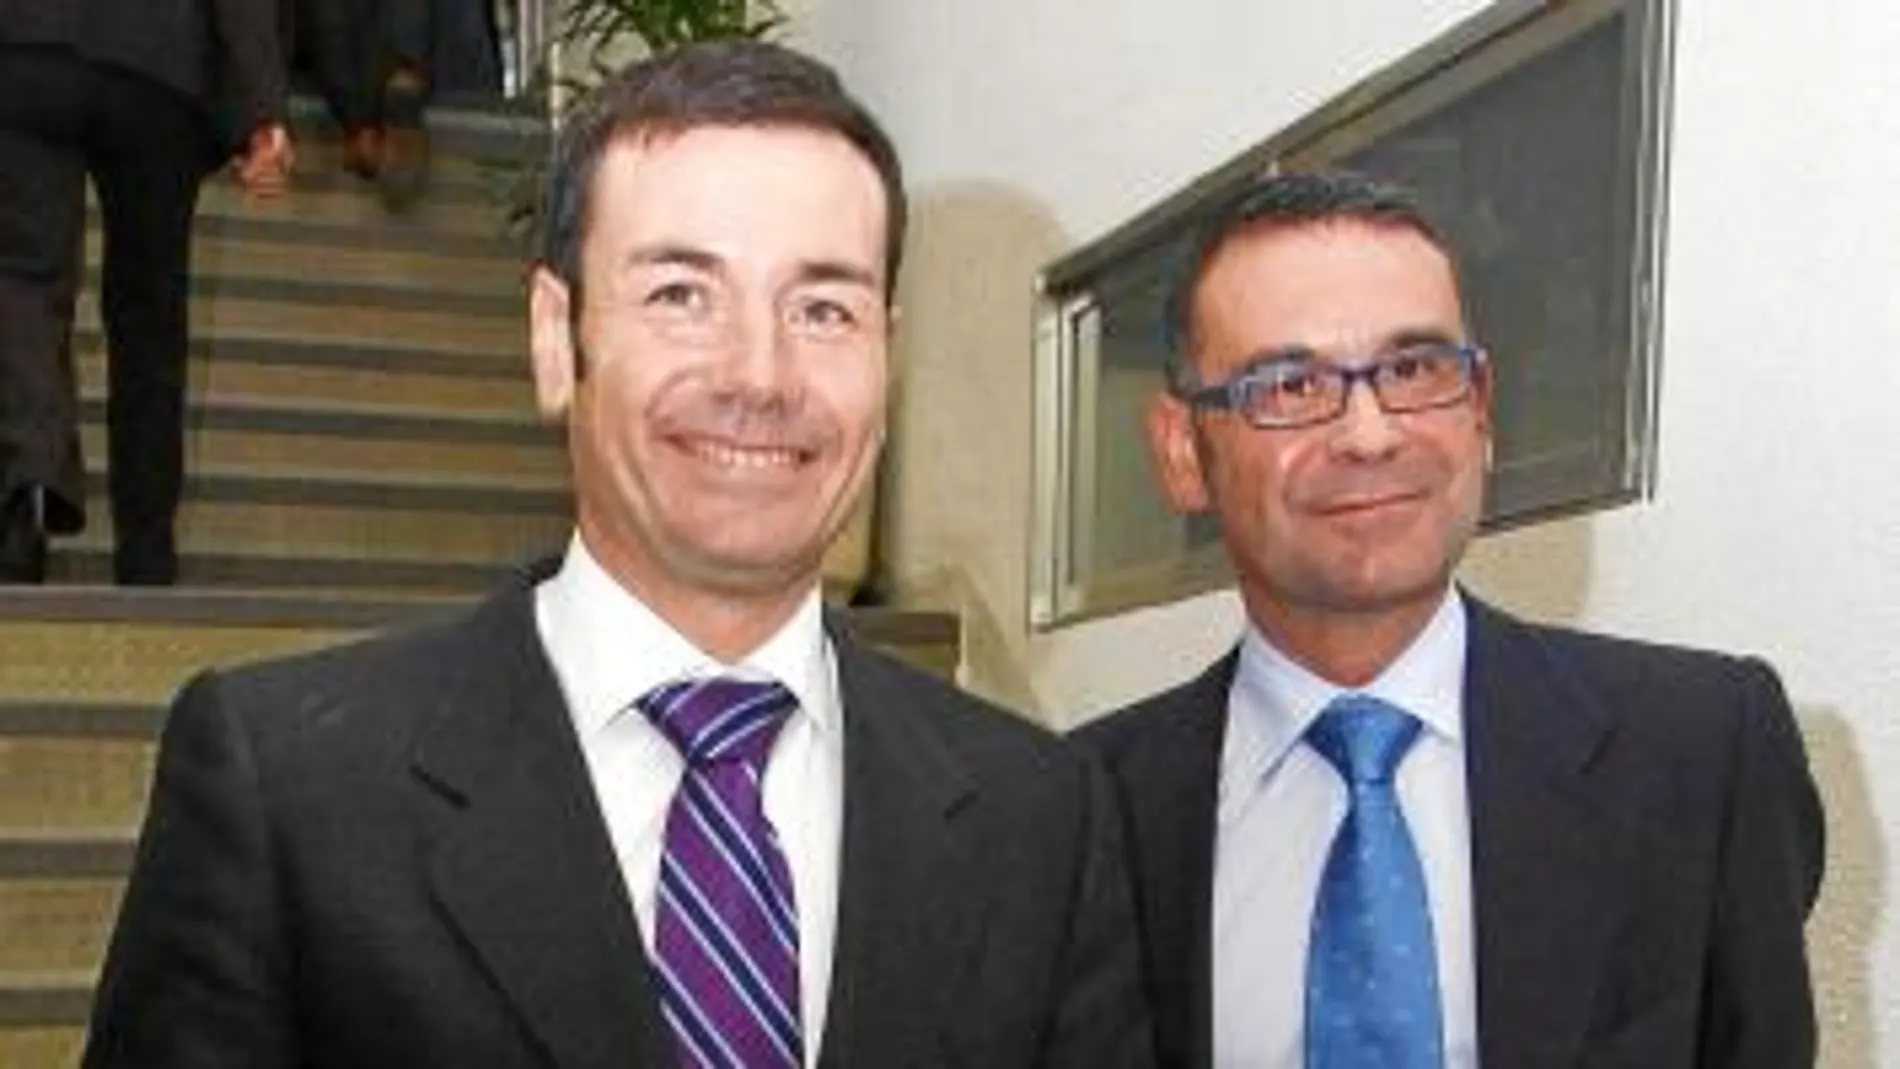 En 2008, José María Fraile recibió de manos de su predecesor, Tomás Gómez, la Alcaldía de Parla con una deuda de 240 millones de euros, un «pufo» que casi doblaba el presupuesto municipal de la localidad